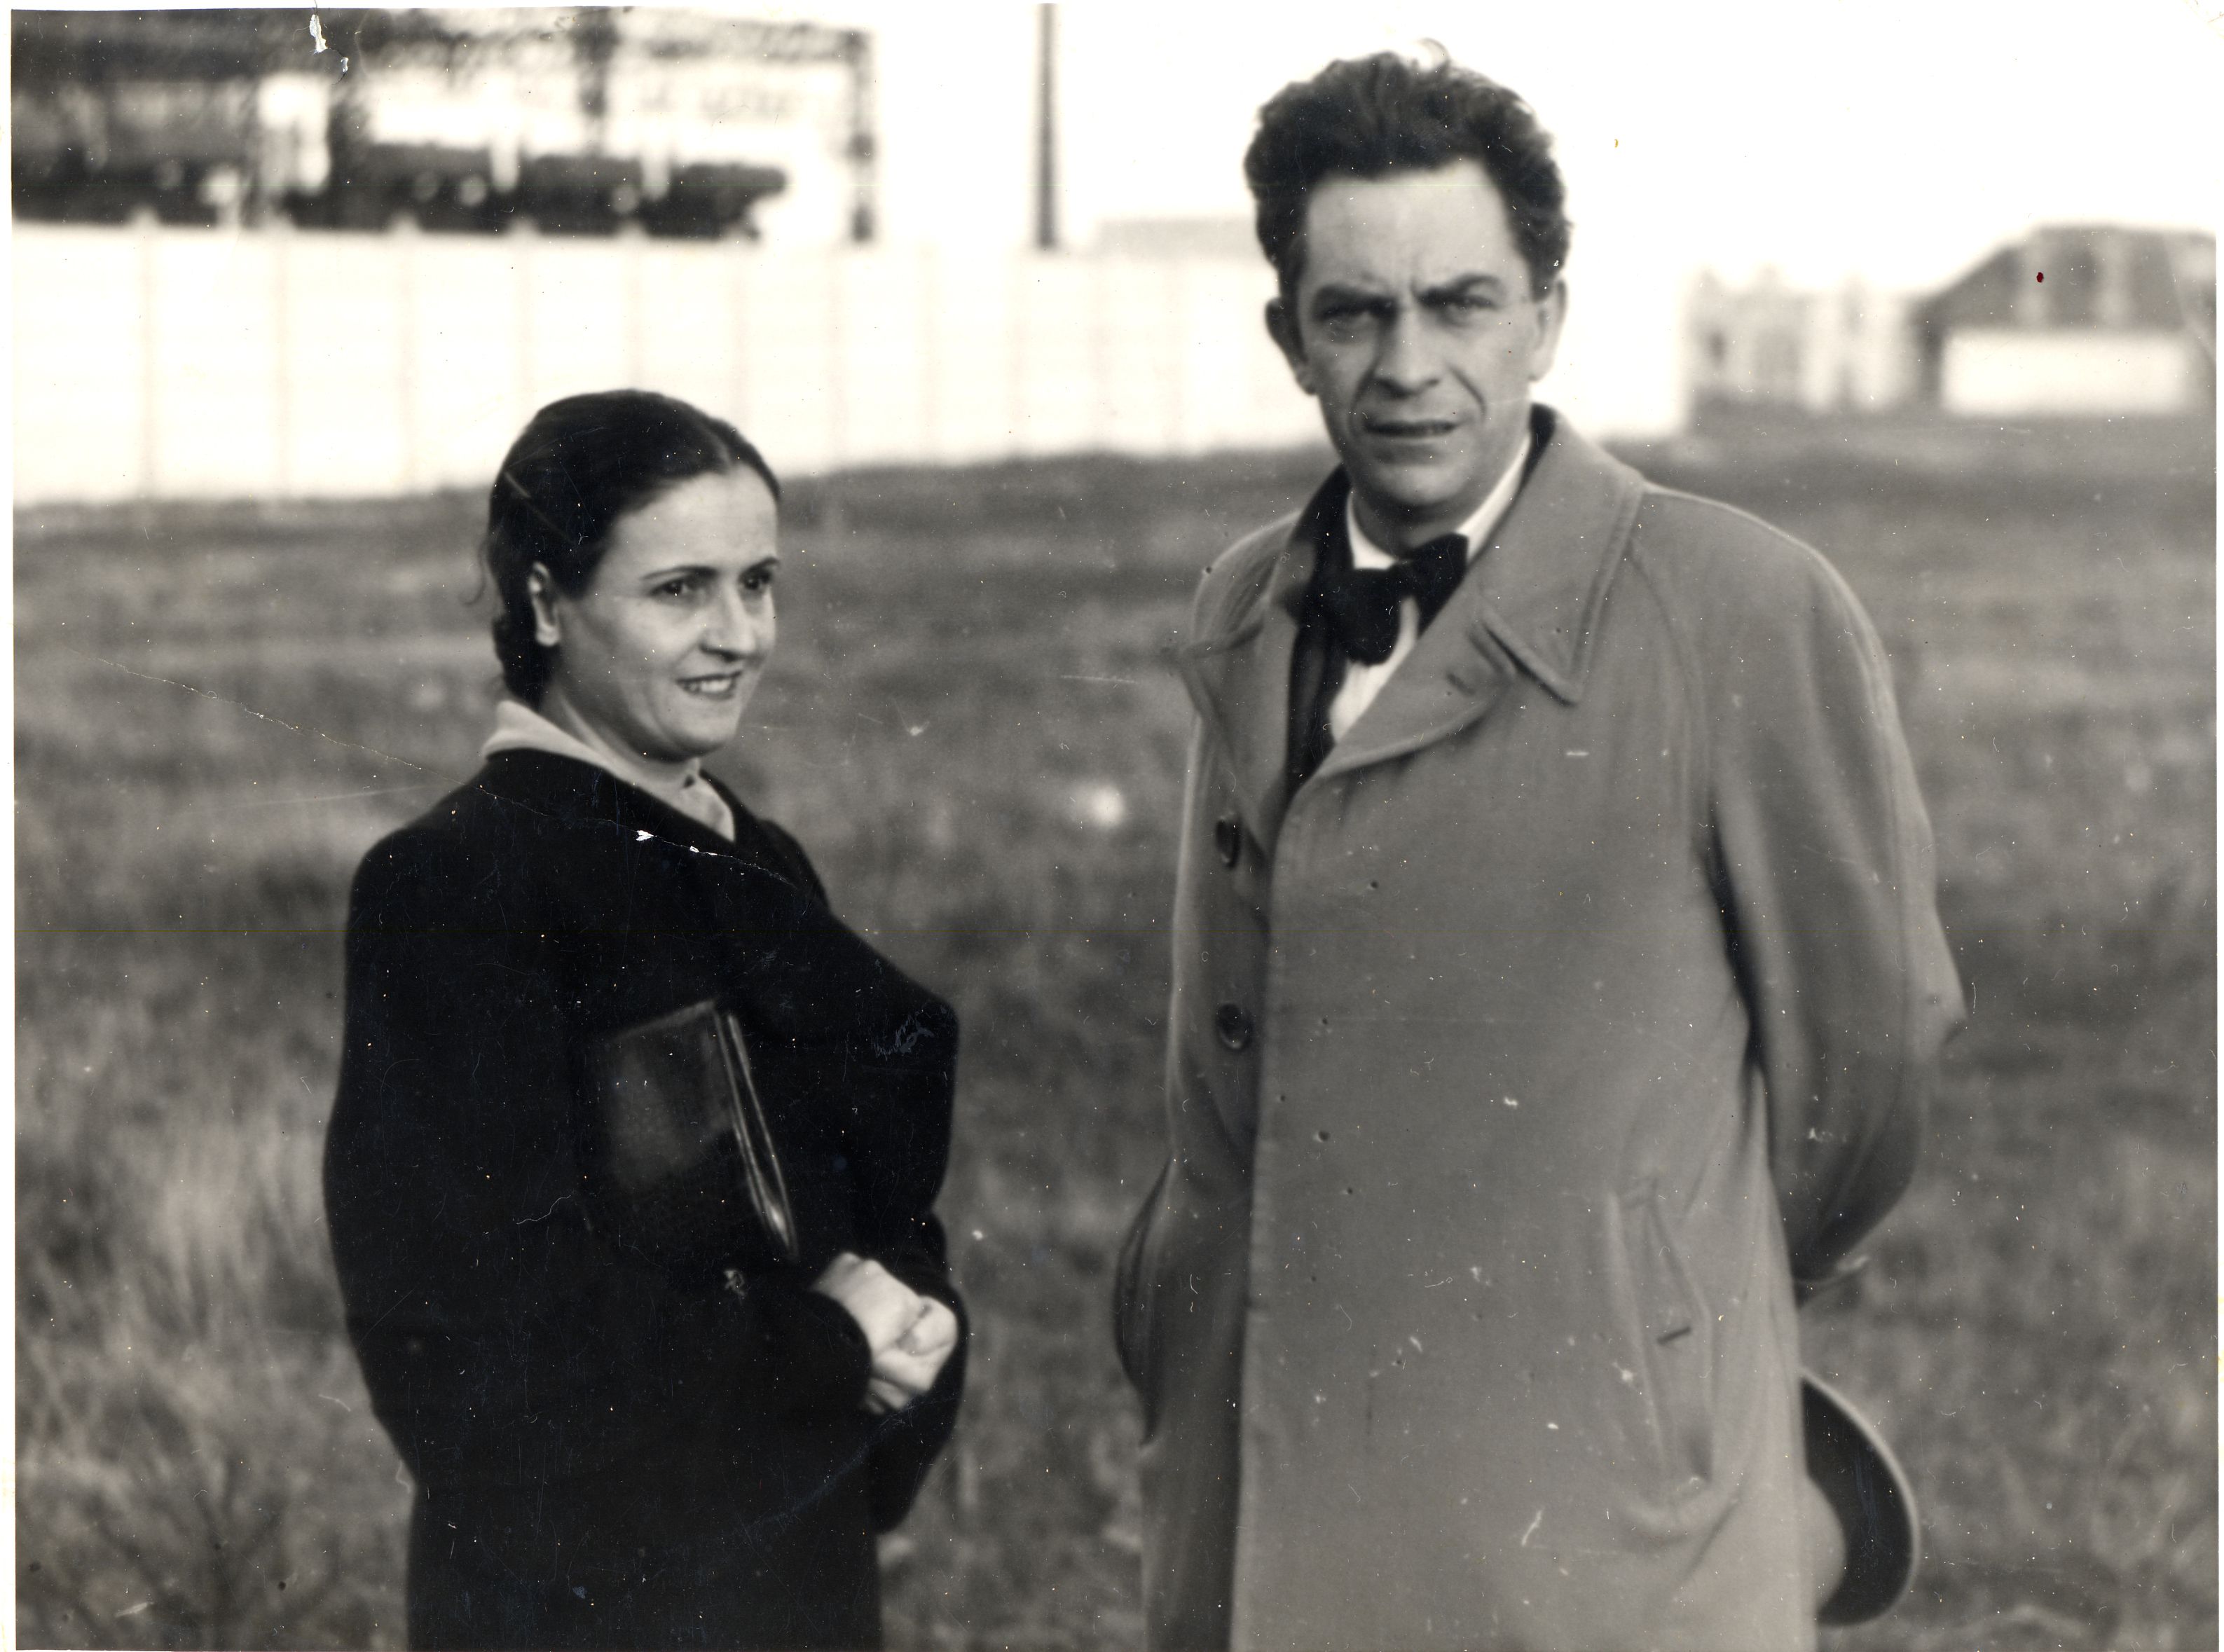 El escritor Manuel Chaves Nogales con Ana Pérez Ruiz, probablemente en Francia entre 1937 y 1940, dada la edad de ambos y porque ella no le acompañó al Reino Unido.